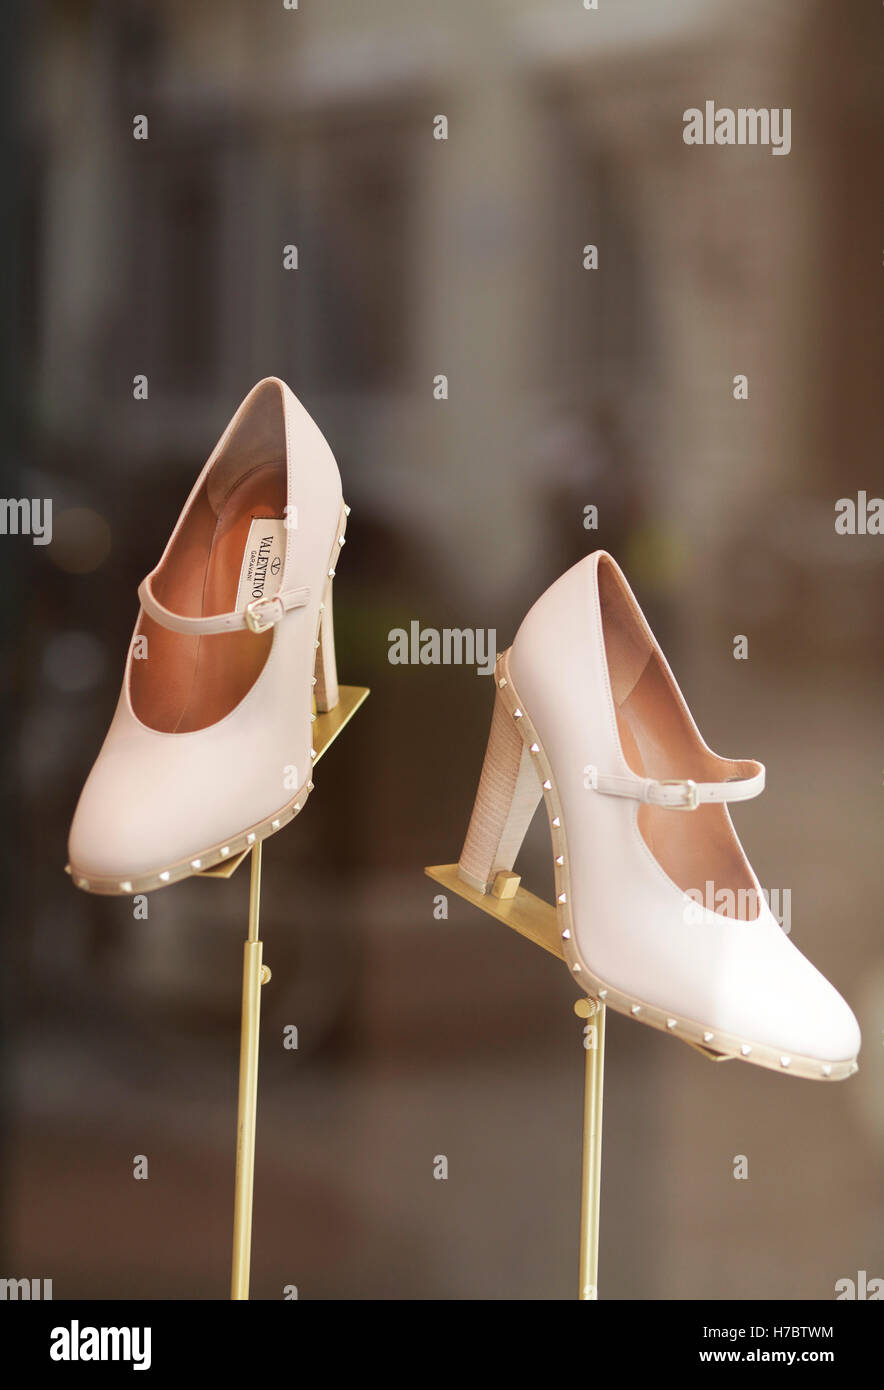 La vetrina del negozio Valentino mostra dei tacchi alti scarpe Foto stock -  Alamy